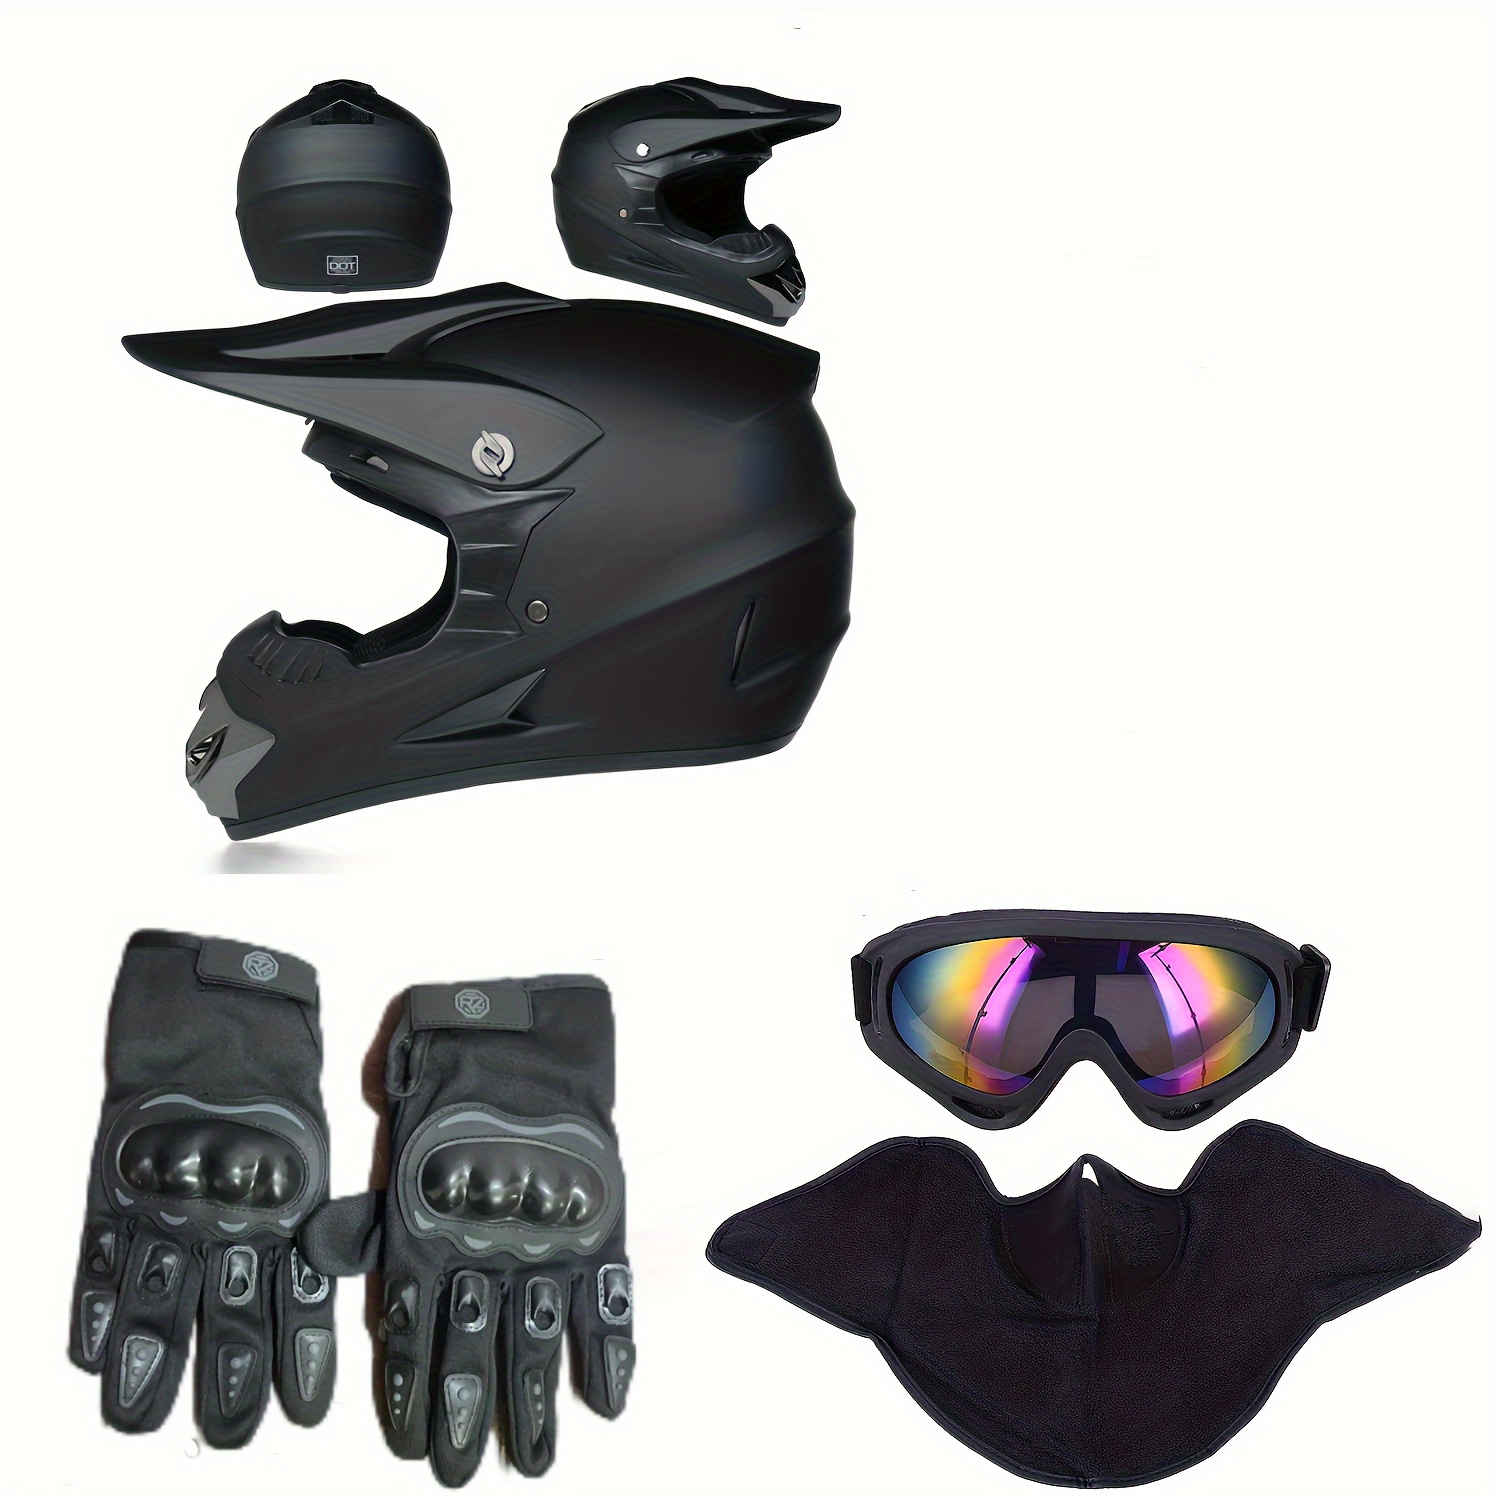  OUMURS Casco de motocross para adultos con gafas, guantes y  máscara ajustable, visera solar, casco para motocicleta, ATV para adultos,  motocross, descenso, ciclomotor, MX BMX para adultos, unisex - negro mate